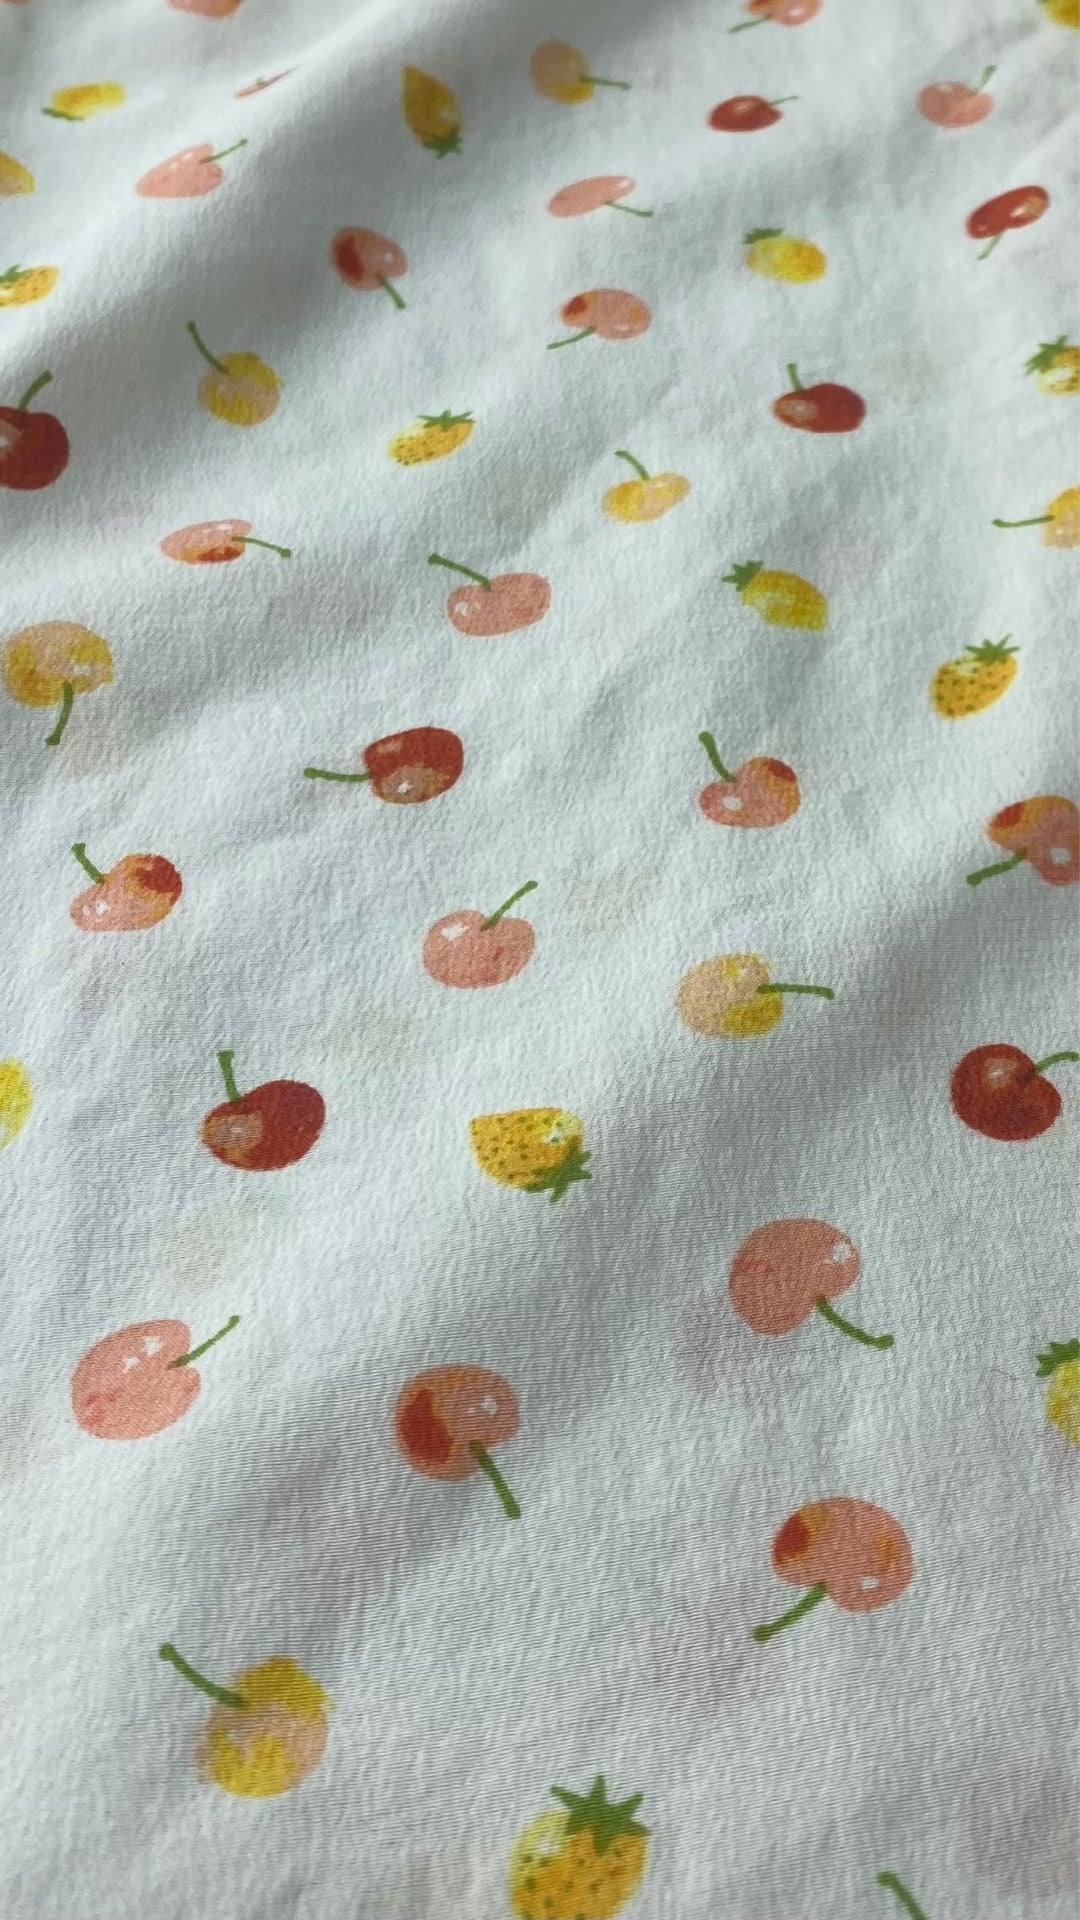 Chemisier sans manches en soie à motifs de petits fruits, Equipment, taille small. Vue de près du tissu.